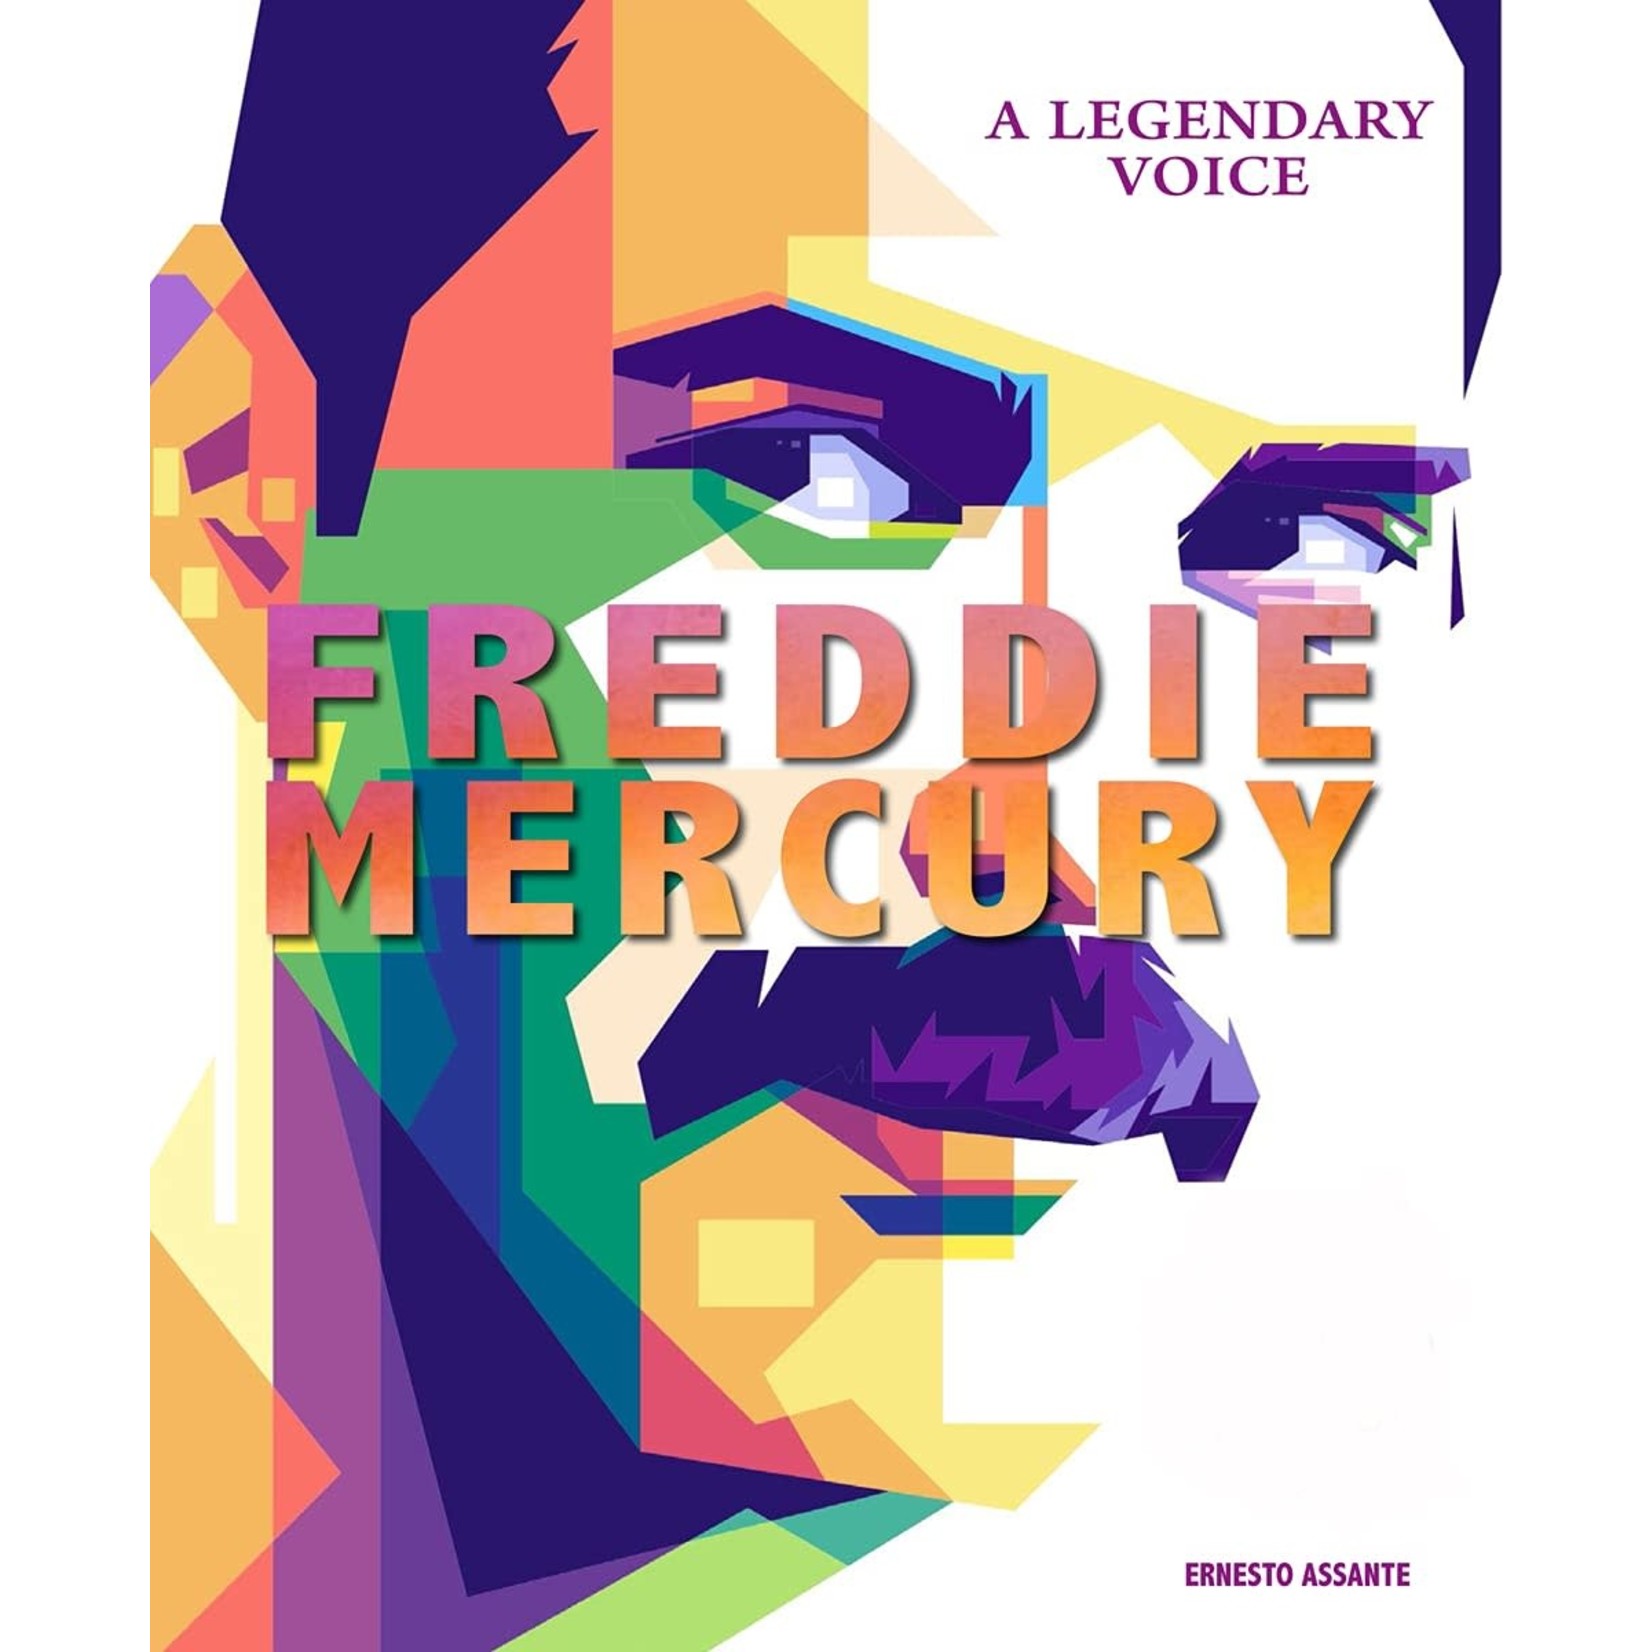 Freddie Mercury (Queen) - A Legendary Voice [Book]